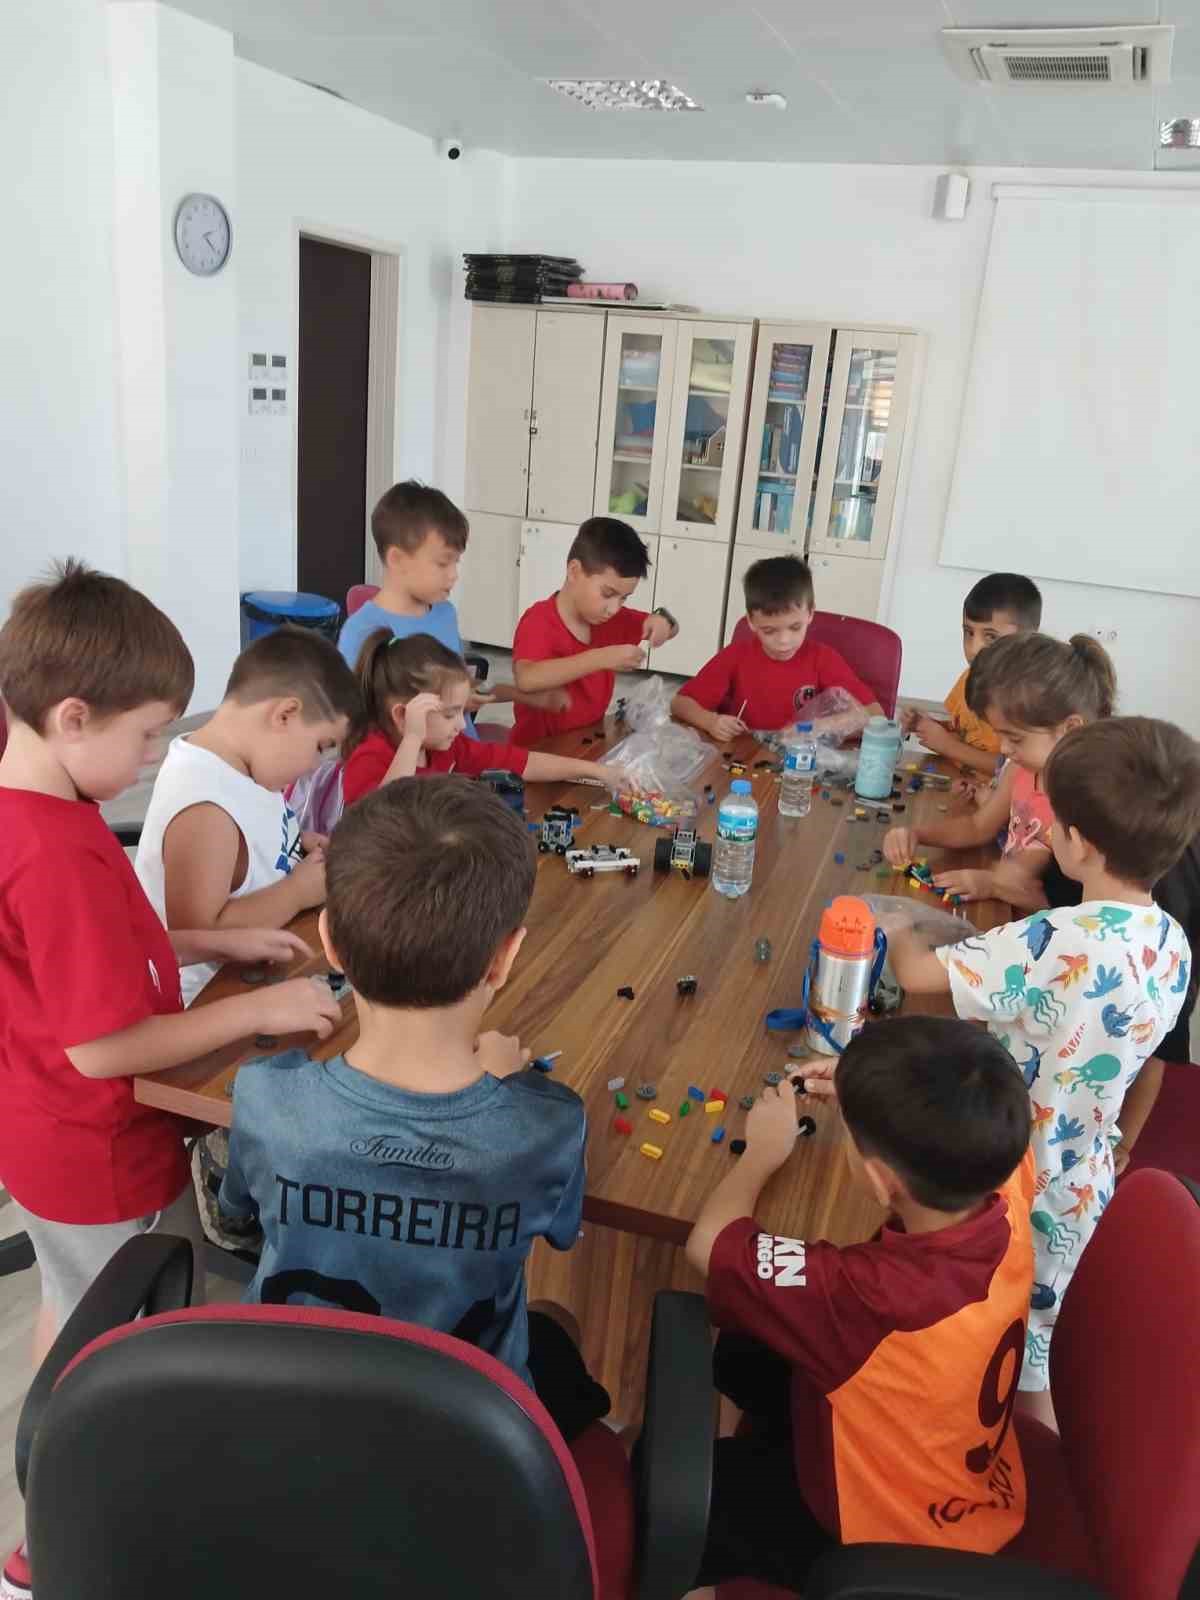 Muğla’da çocuklar kültürden sanata ve spora yazı eğlenceli geçiriyor
